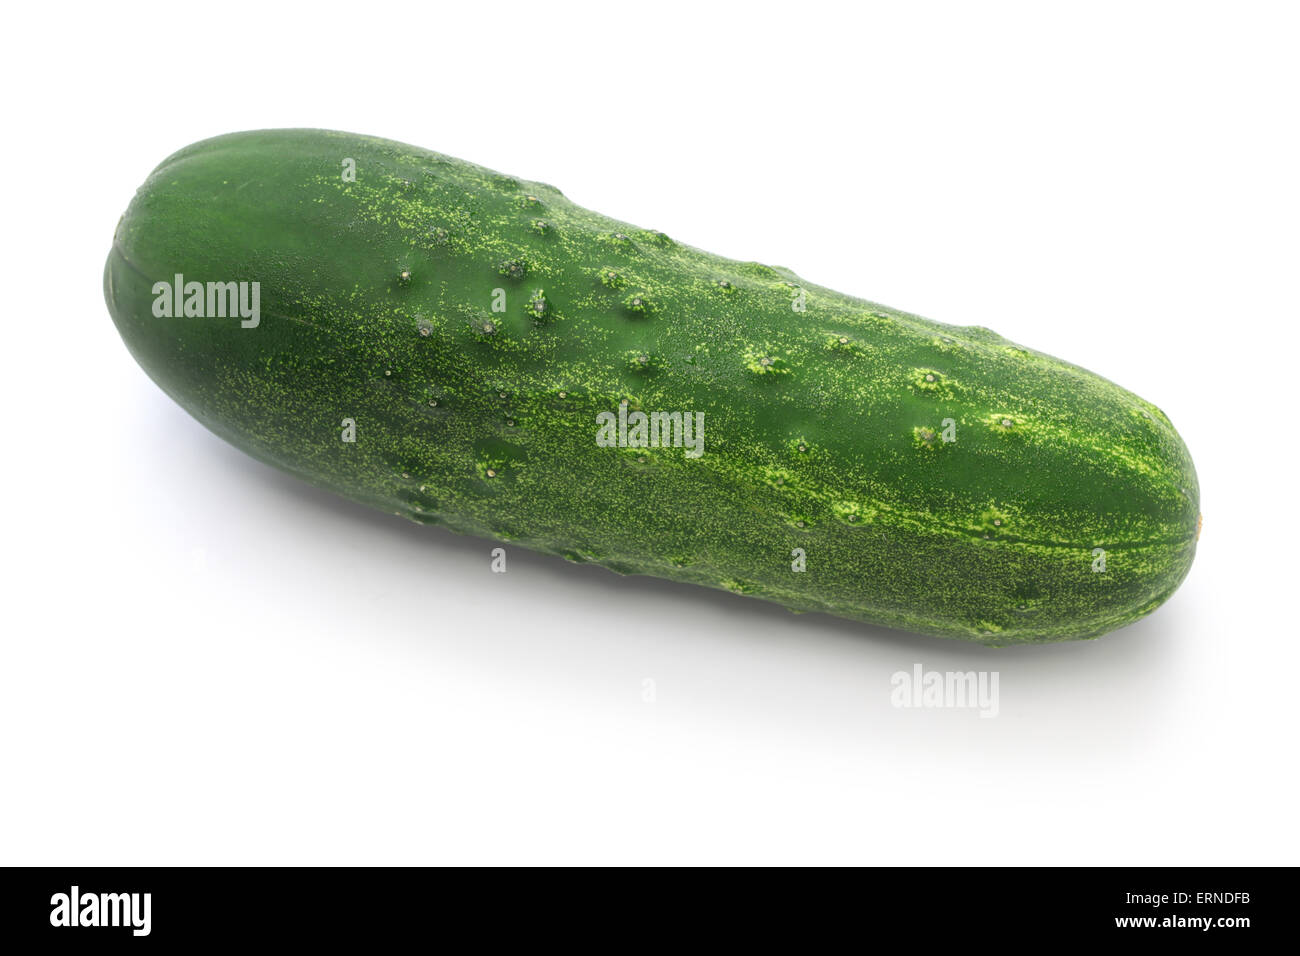 cucumber isolated on white background Stock Photo